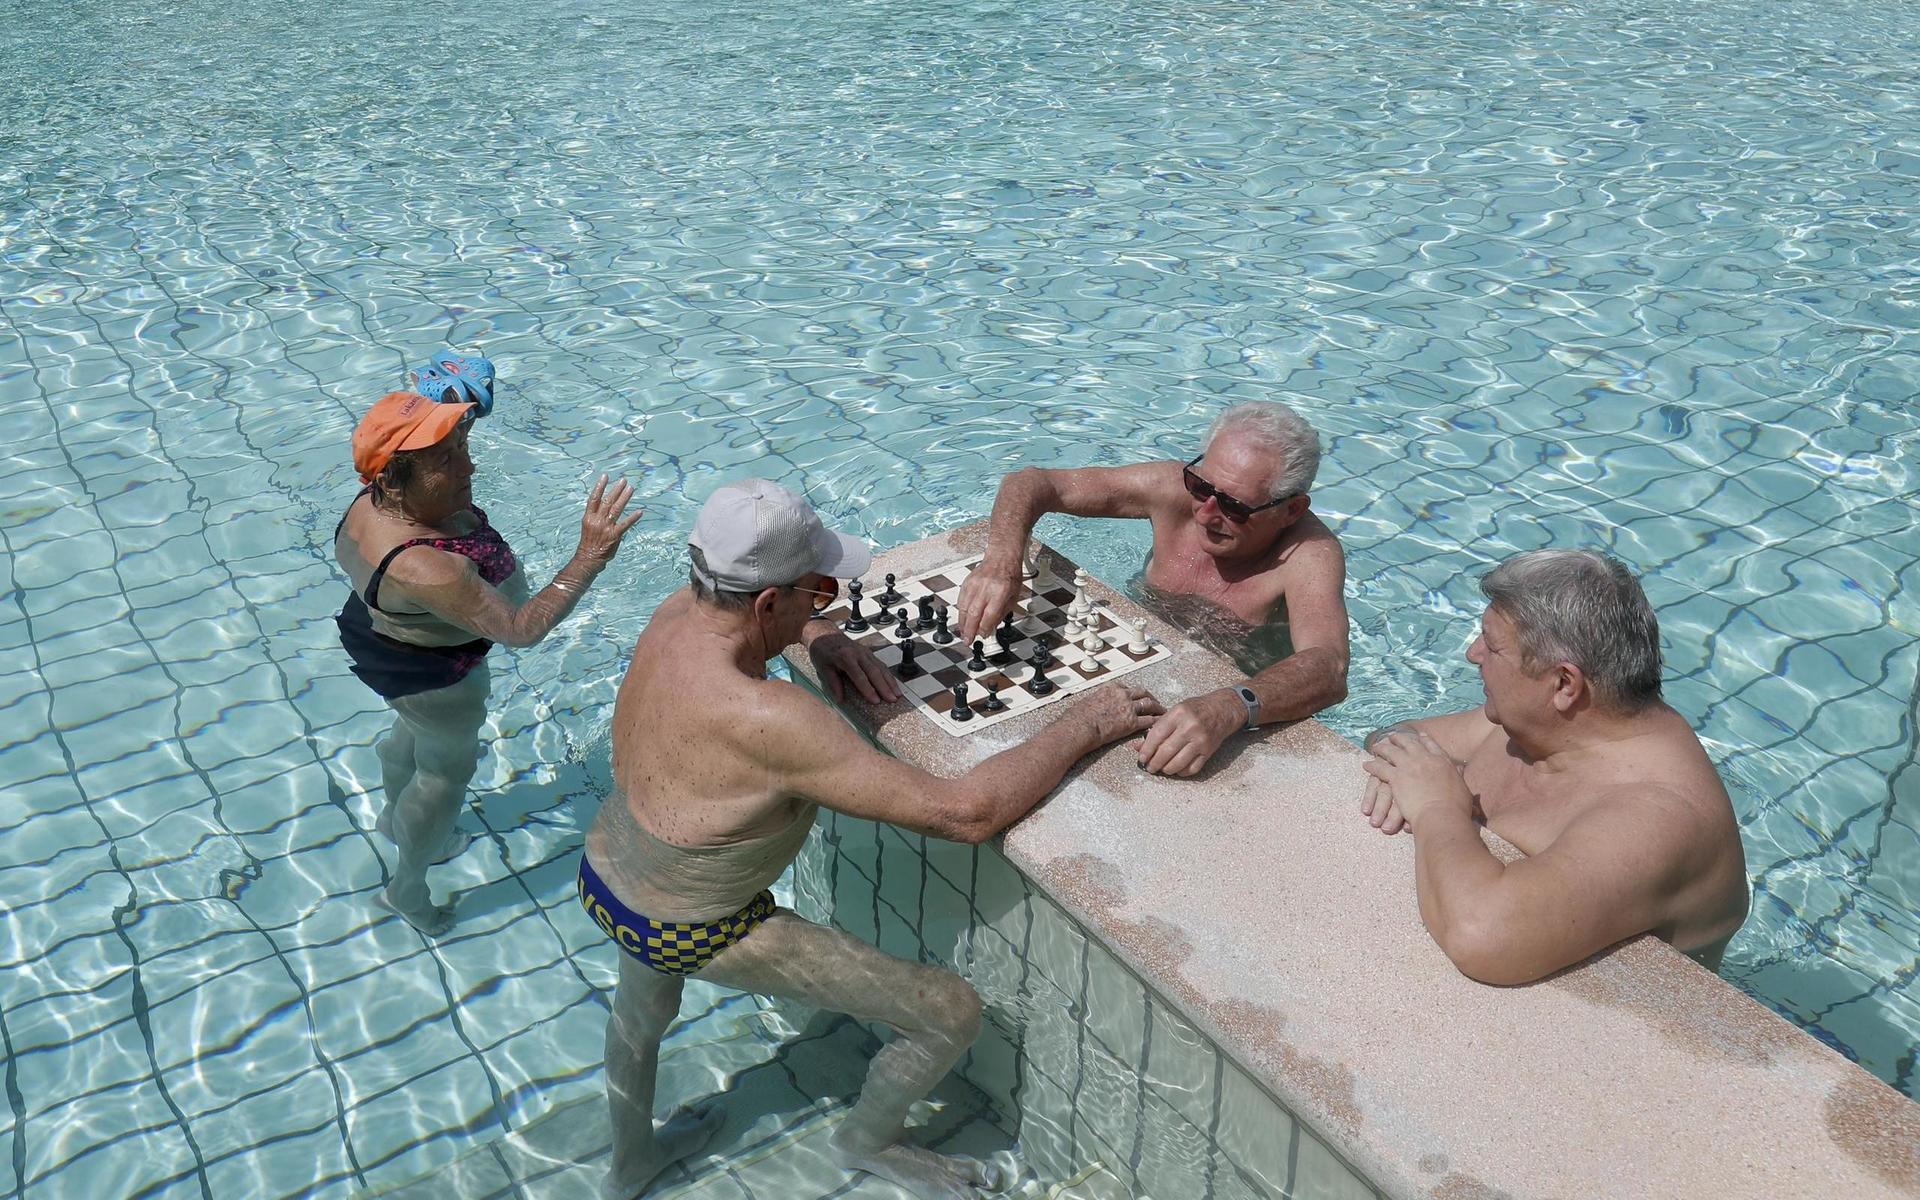 Äldre herrar spelar schack på det nyligen återöppnade Szechenyi-badet i Budapest, Ungern.